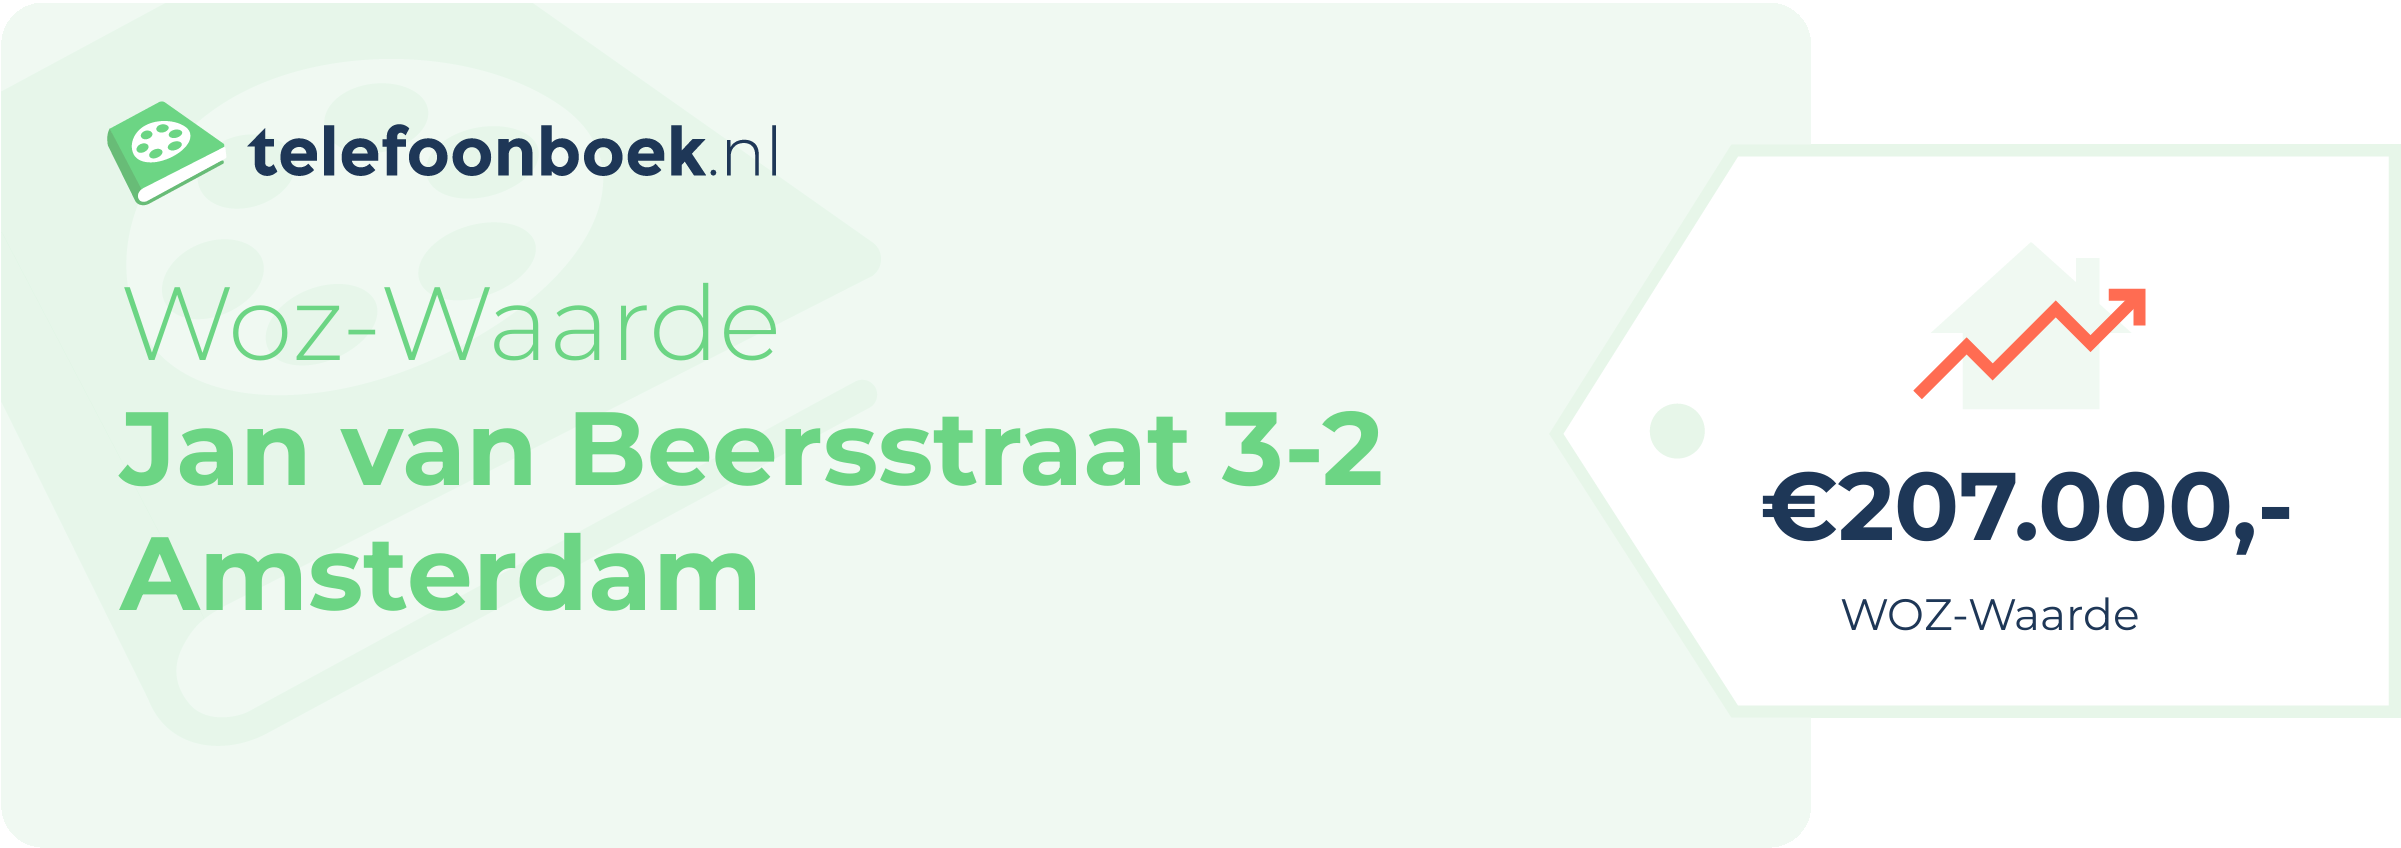 WOZ-waarde Jan Van Beersstraat 3-2 Amsterdam